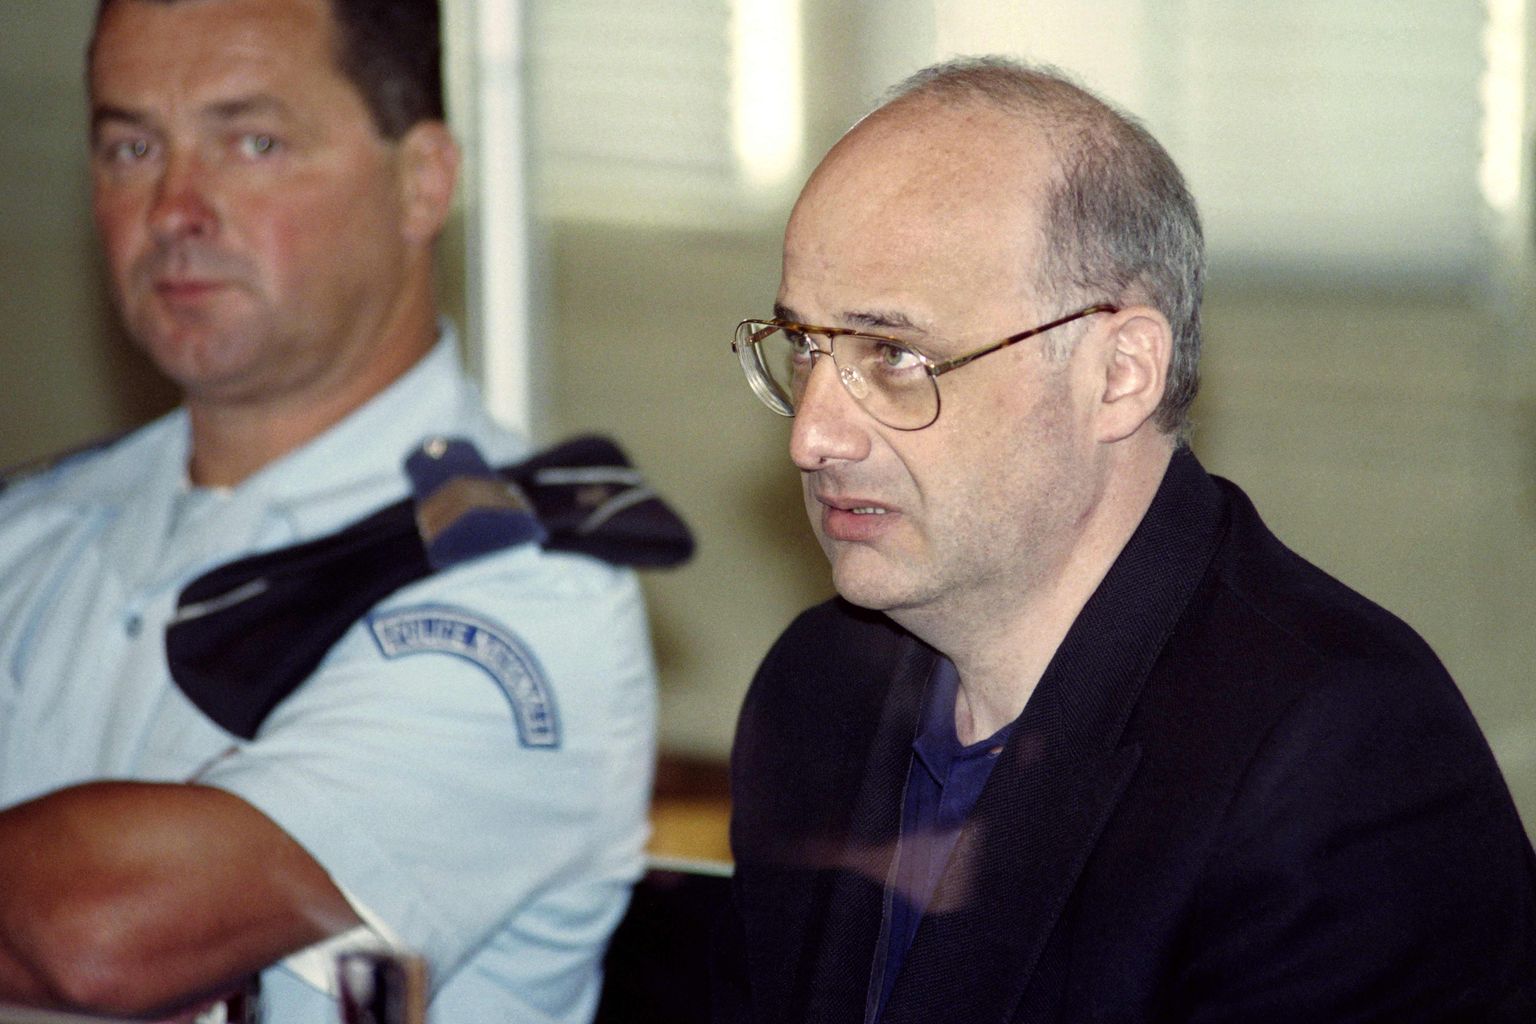 Pilt on tehtud 25.06.1996. aastal, kui Jean-Claude Romandi osales istungil, kus teda süüdistati oma vanemate, abikaasa ja laste tapmises.